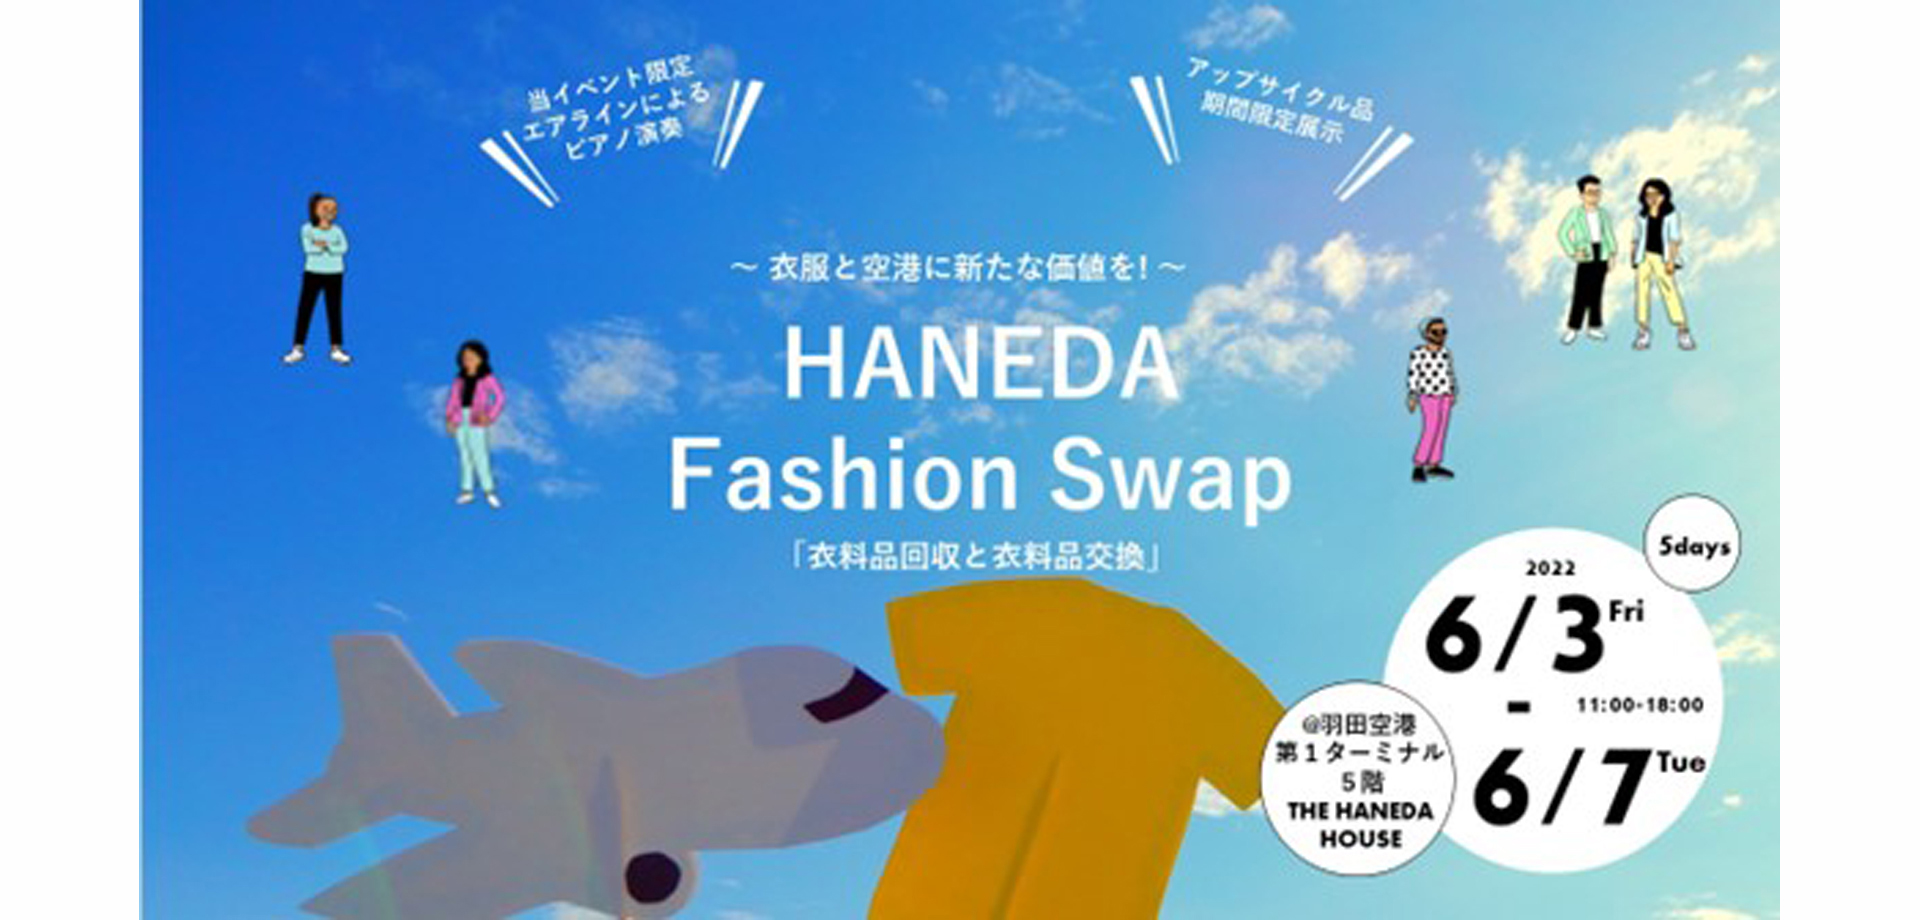 【羽田空港】“HANEDA Fashion Swap”vol.2